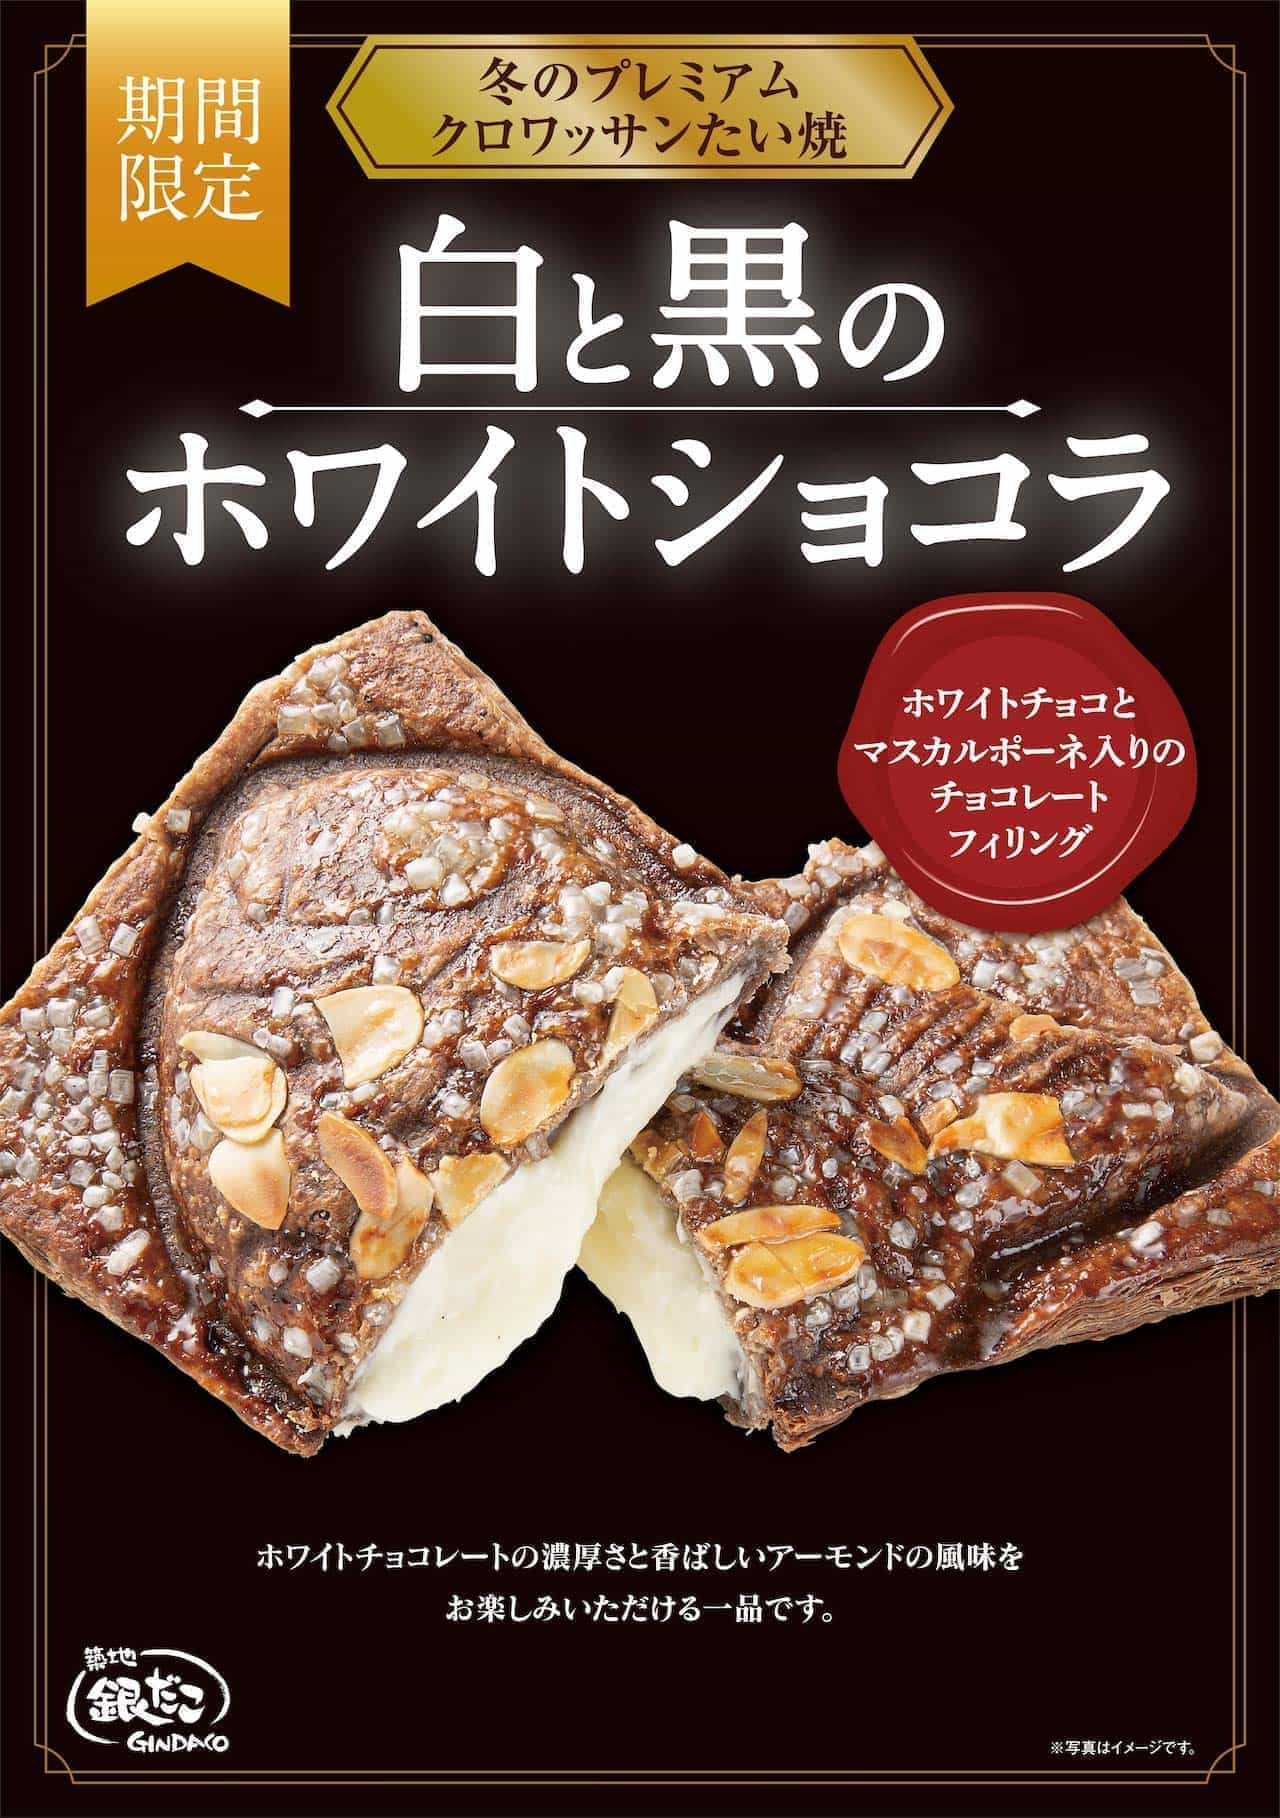 Tsukiji Gindako Croissant Taiyaki White and Black "White Chocolat